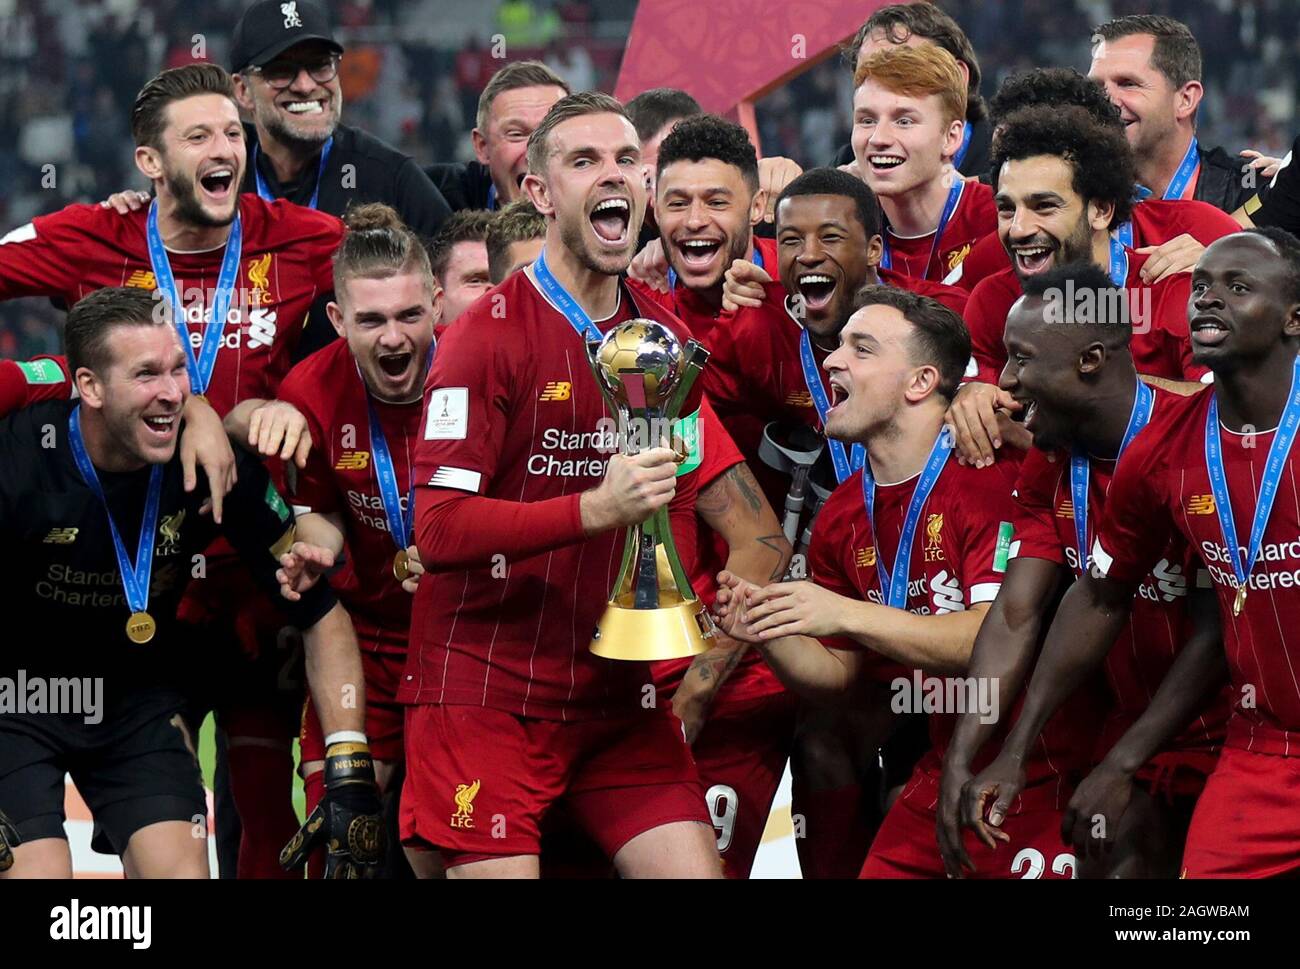 Doha, Katar. 21 Dez, 2019. FC Liverpool Spieler feiern mit der Trophäe nach dem Finale der FIFA Club Weltmeisterschaft Katar 2019 gegen Flamengo in Doha, der Hauptstadt von Katar, Dez. 21, 2019. Credit: Nikku/Xinhua/Alamy leben Nachrichten Stockfoto